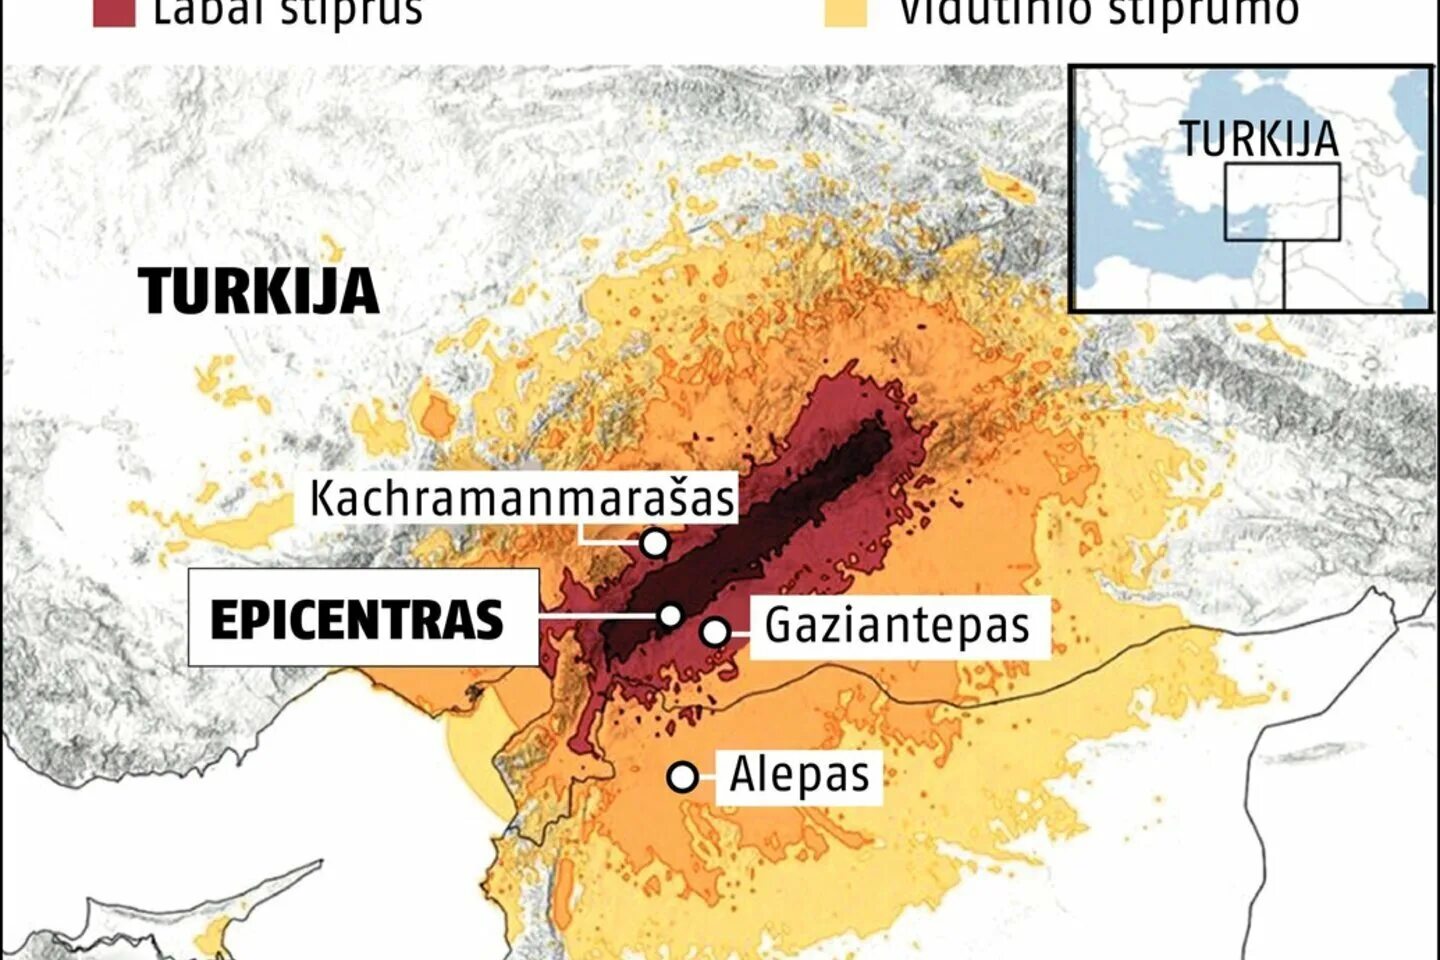 Землетрясение в Турции 2023 года на карте. Землетрясение в Турции на карте. Карта землетрясений. Землетрясение в Турции карта толчков. Землетрясение в этом регионе отнюдь не редкие